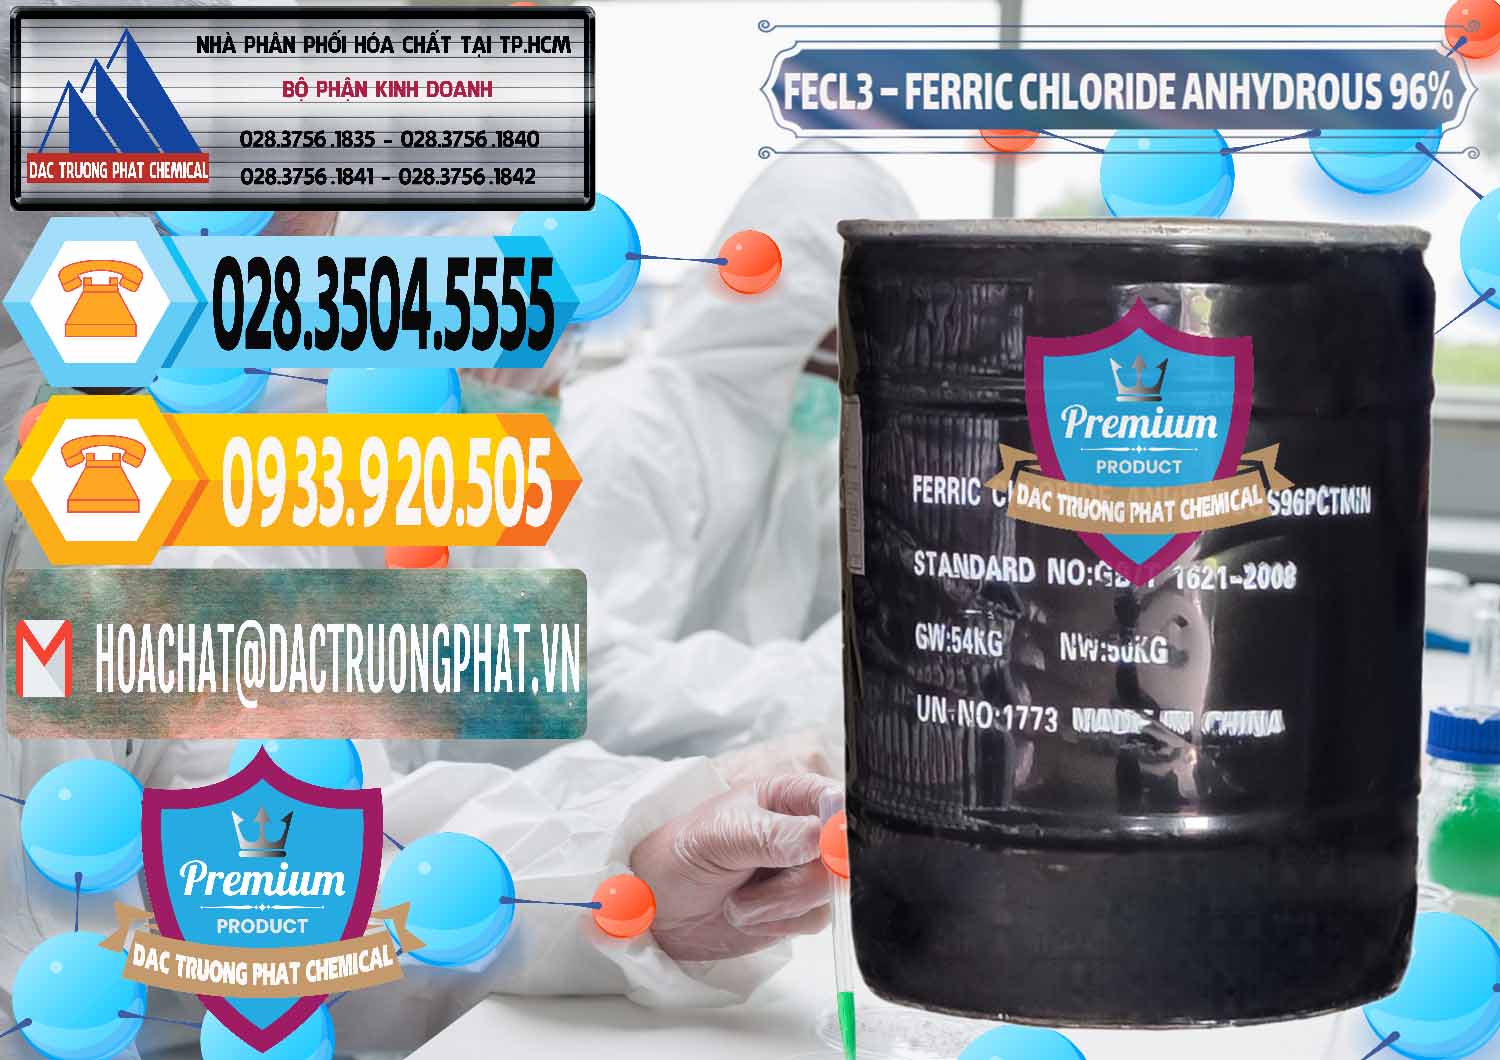 Bán _ cung ứng FECL3 – Ferric Chloride Anhydrous 96% Trung Quốc China - 0065 - Công ty chuyên nhập khẩu _ phân phối hóa chất tại TP.HCM - hoachattayrua.net